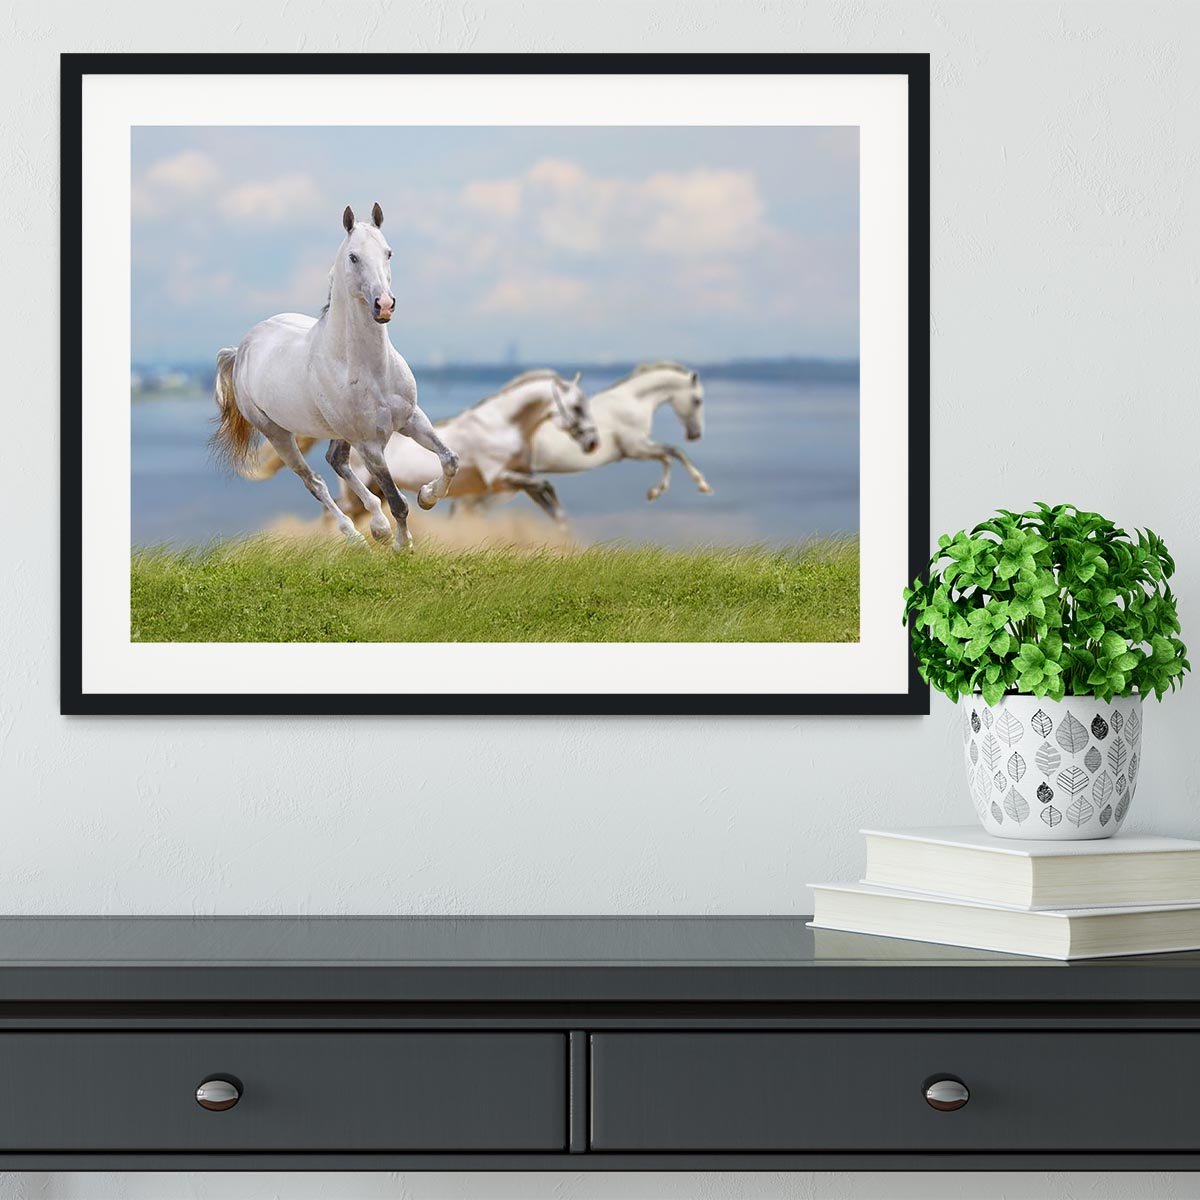 White horses running near water Framed Print - Canvas Art Rocks - 1